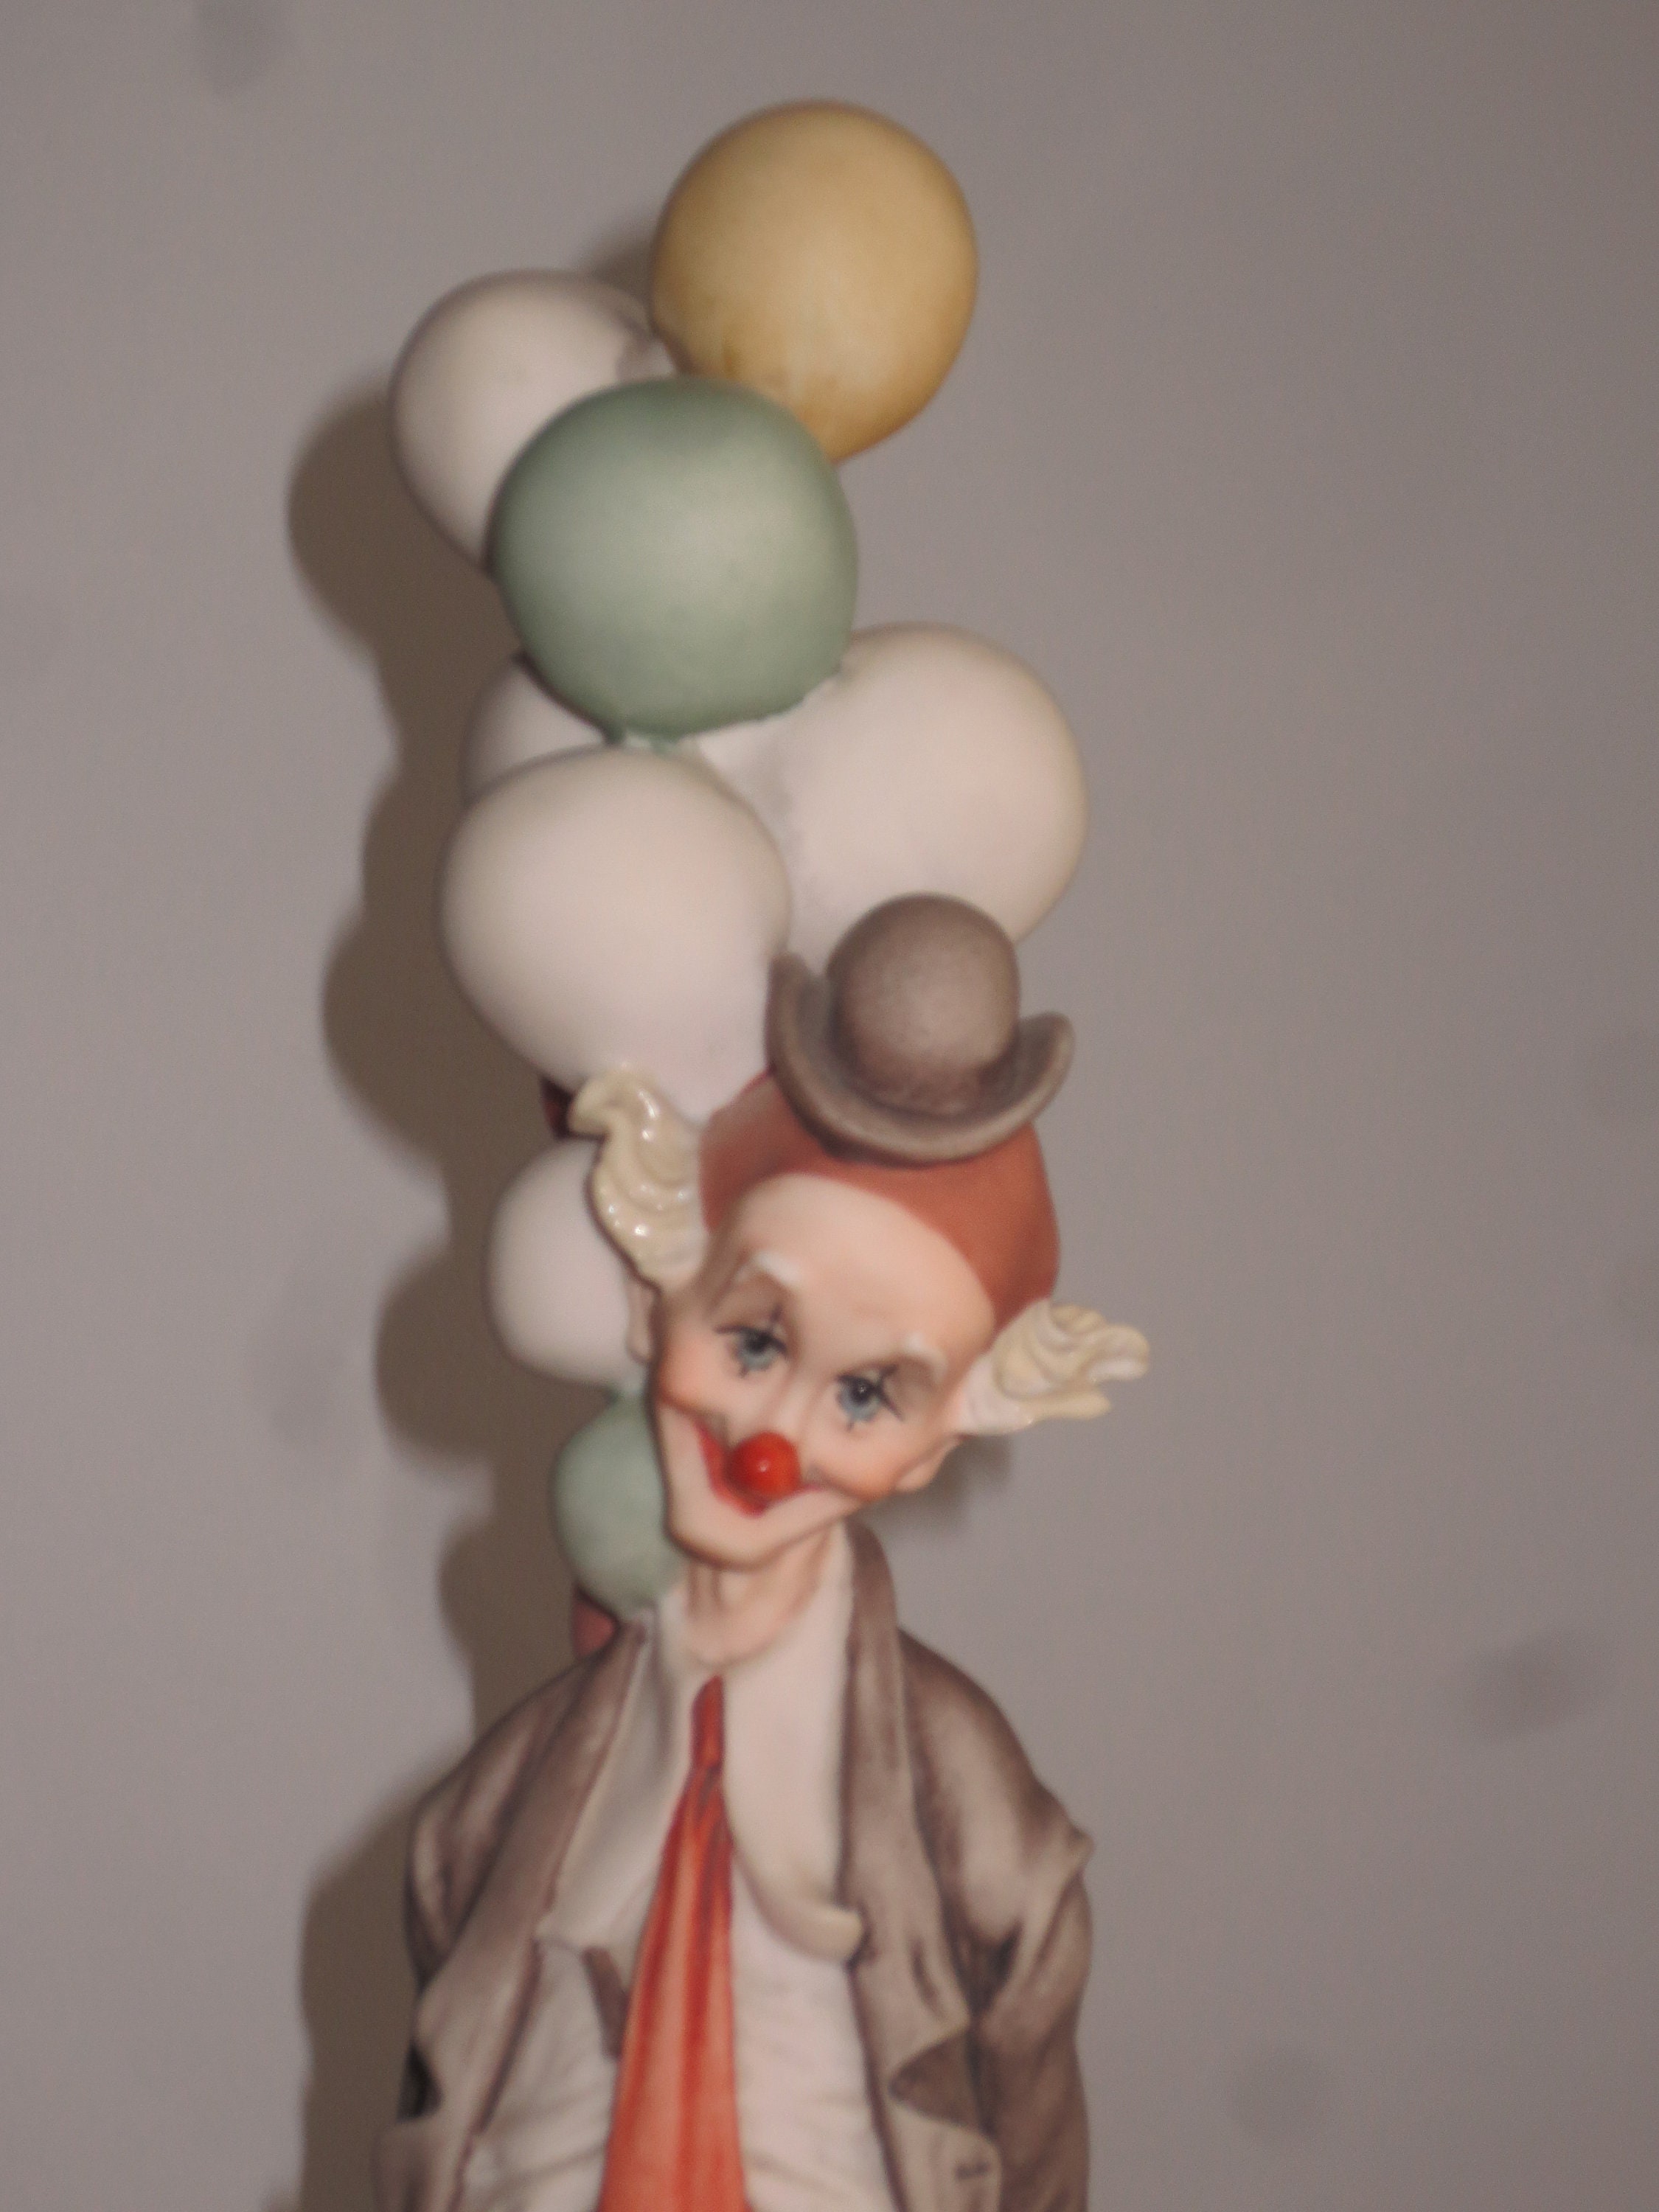 Giuseppe Armani The Pensive Clown With Balloons Sculpture 0268e